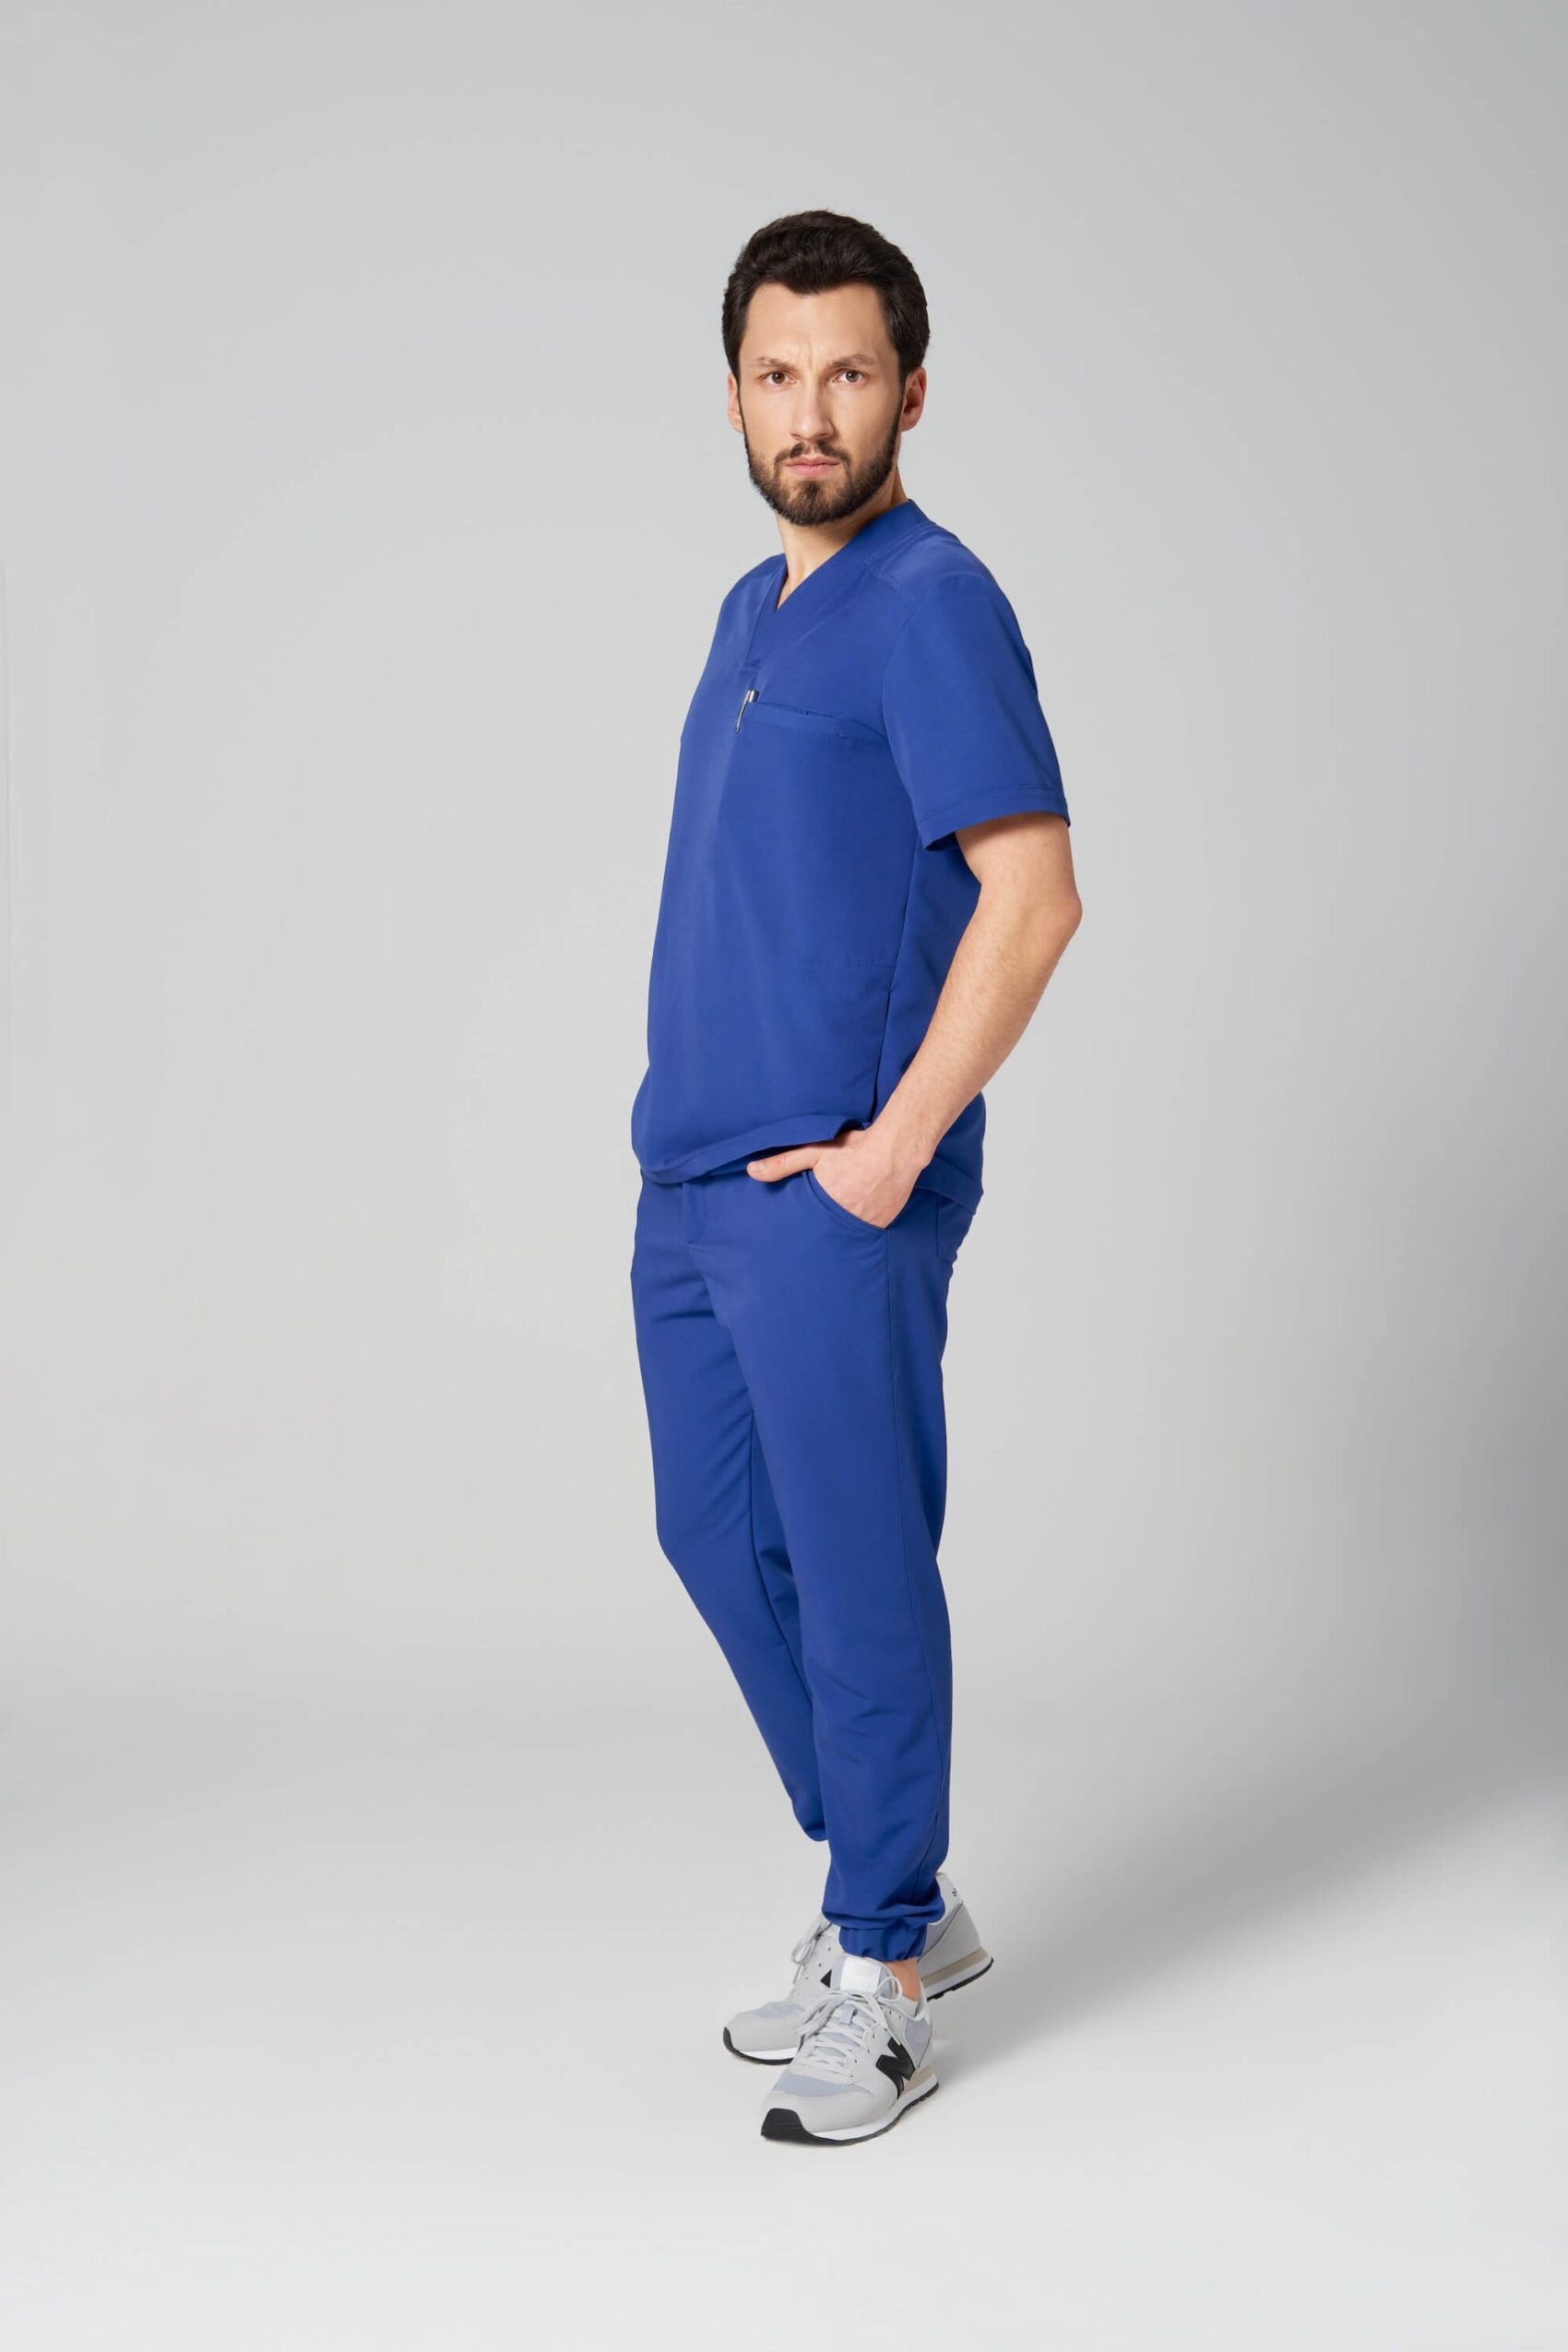 Spodnie medyczne męskie joggery GENUS healing blue